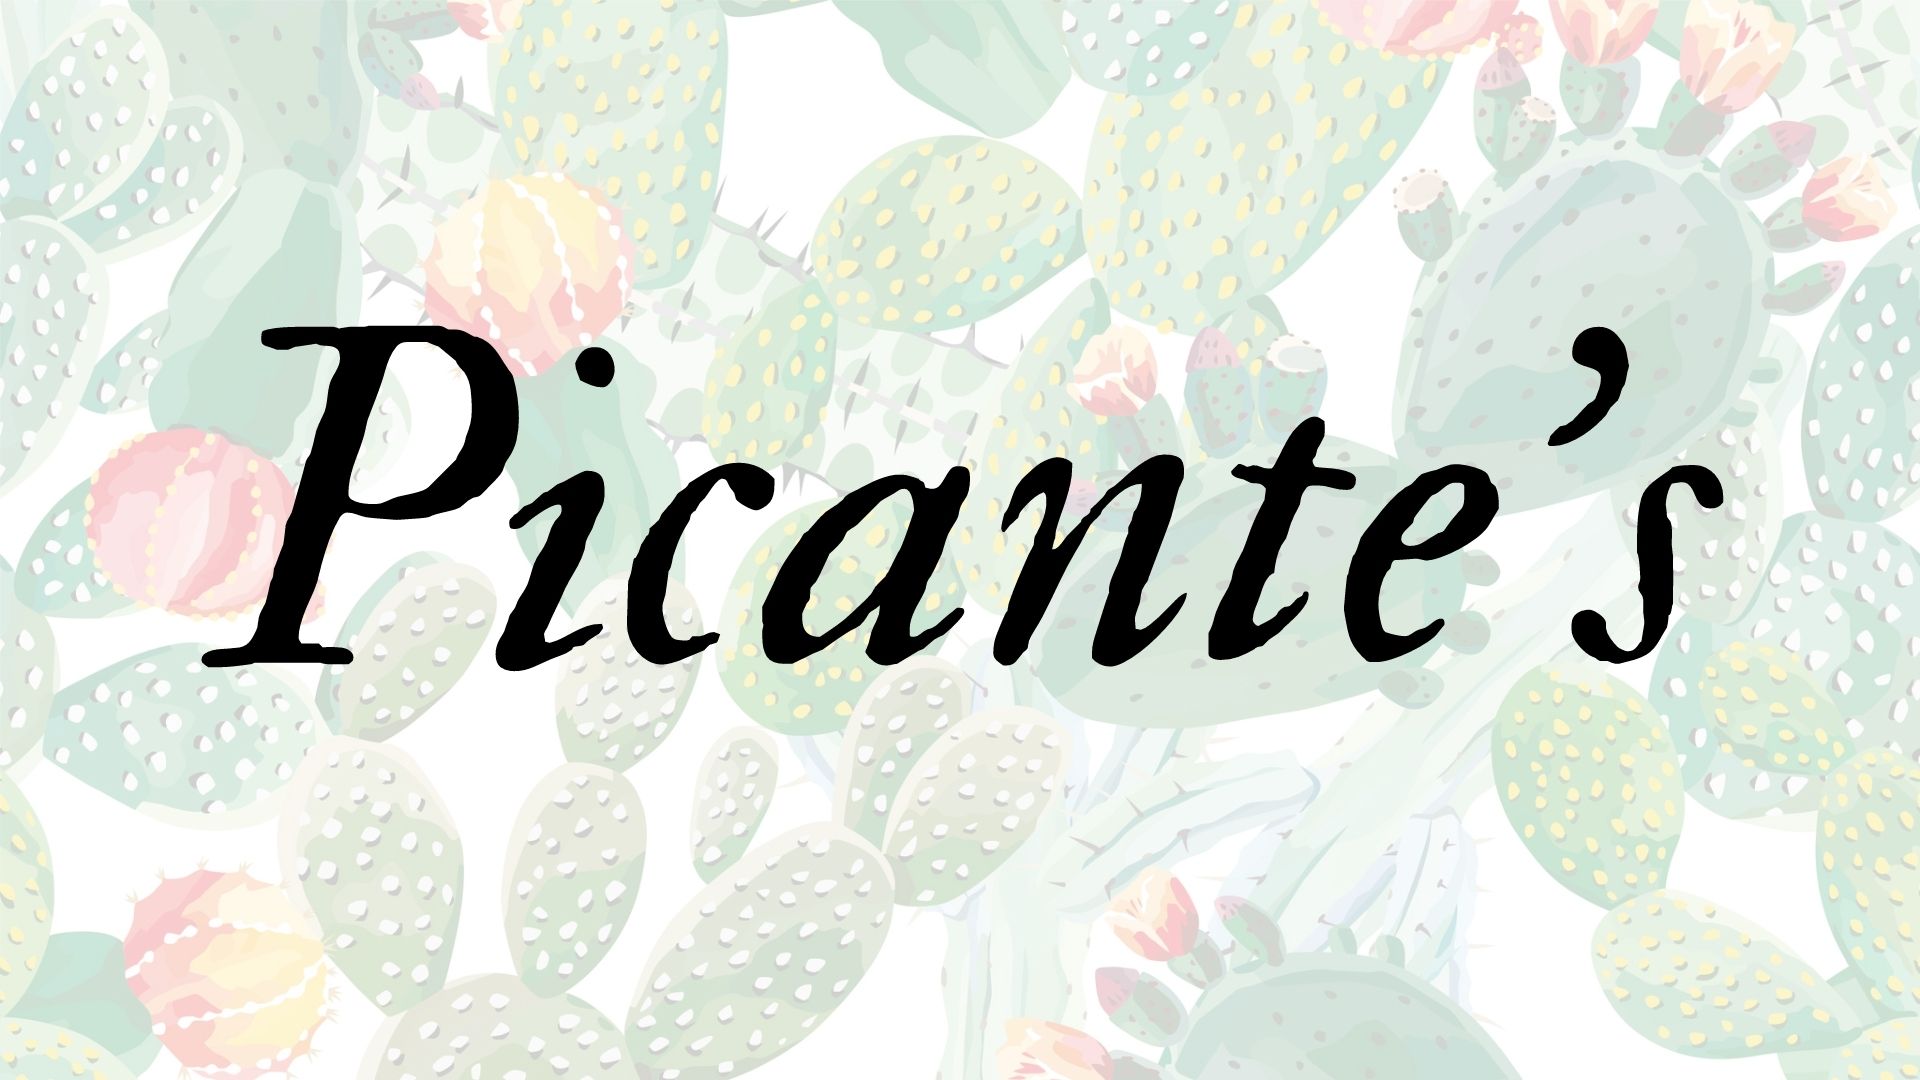 Picante's